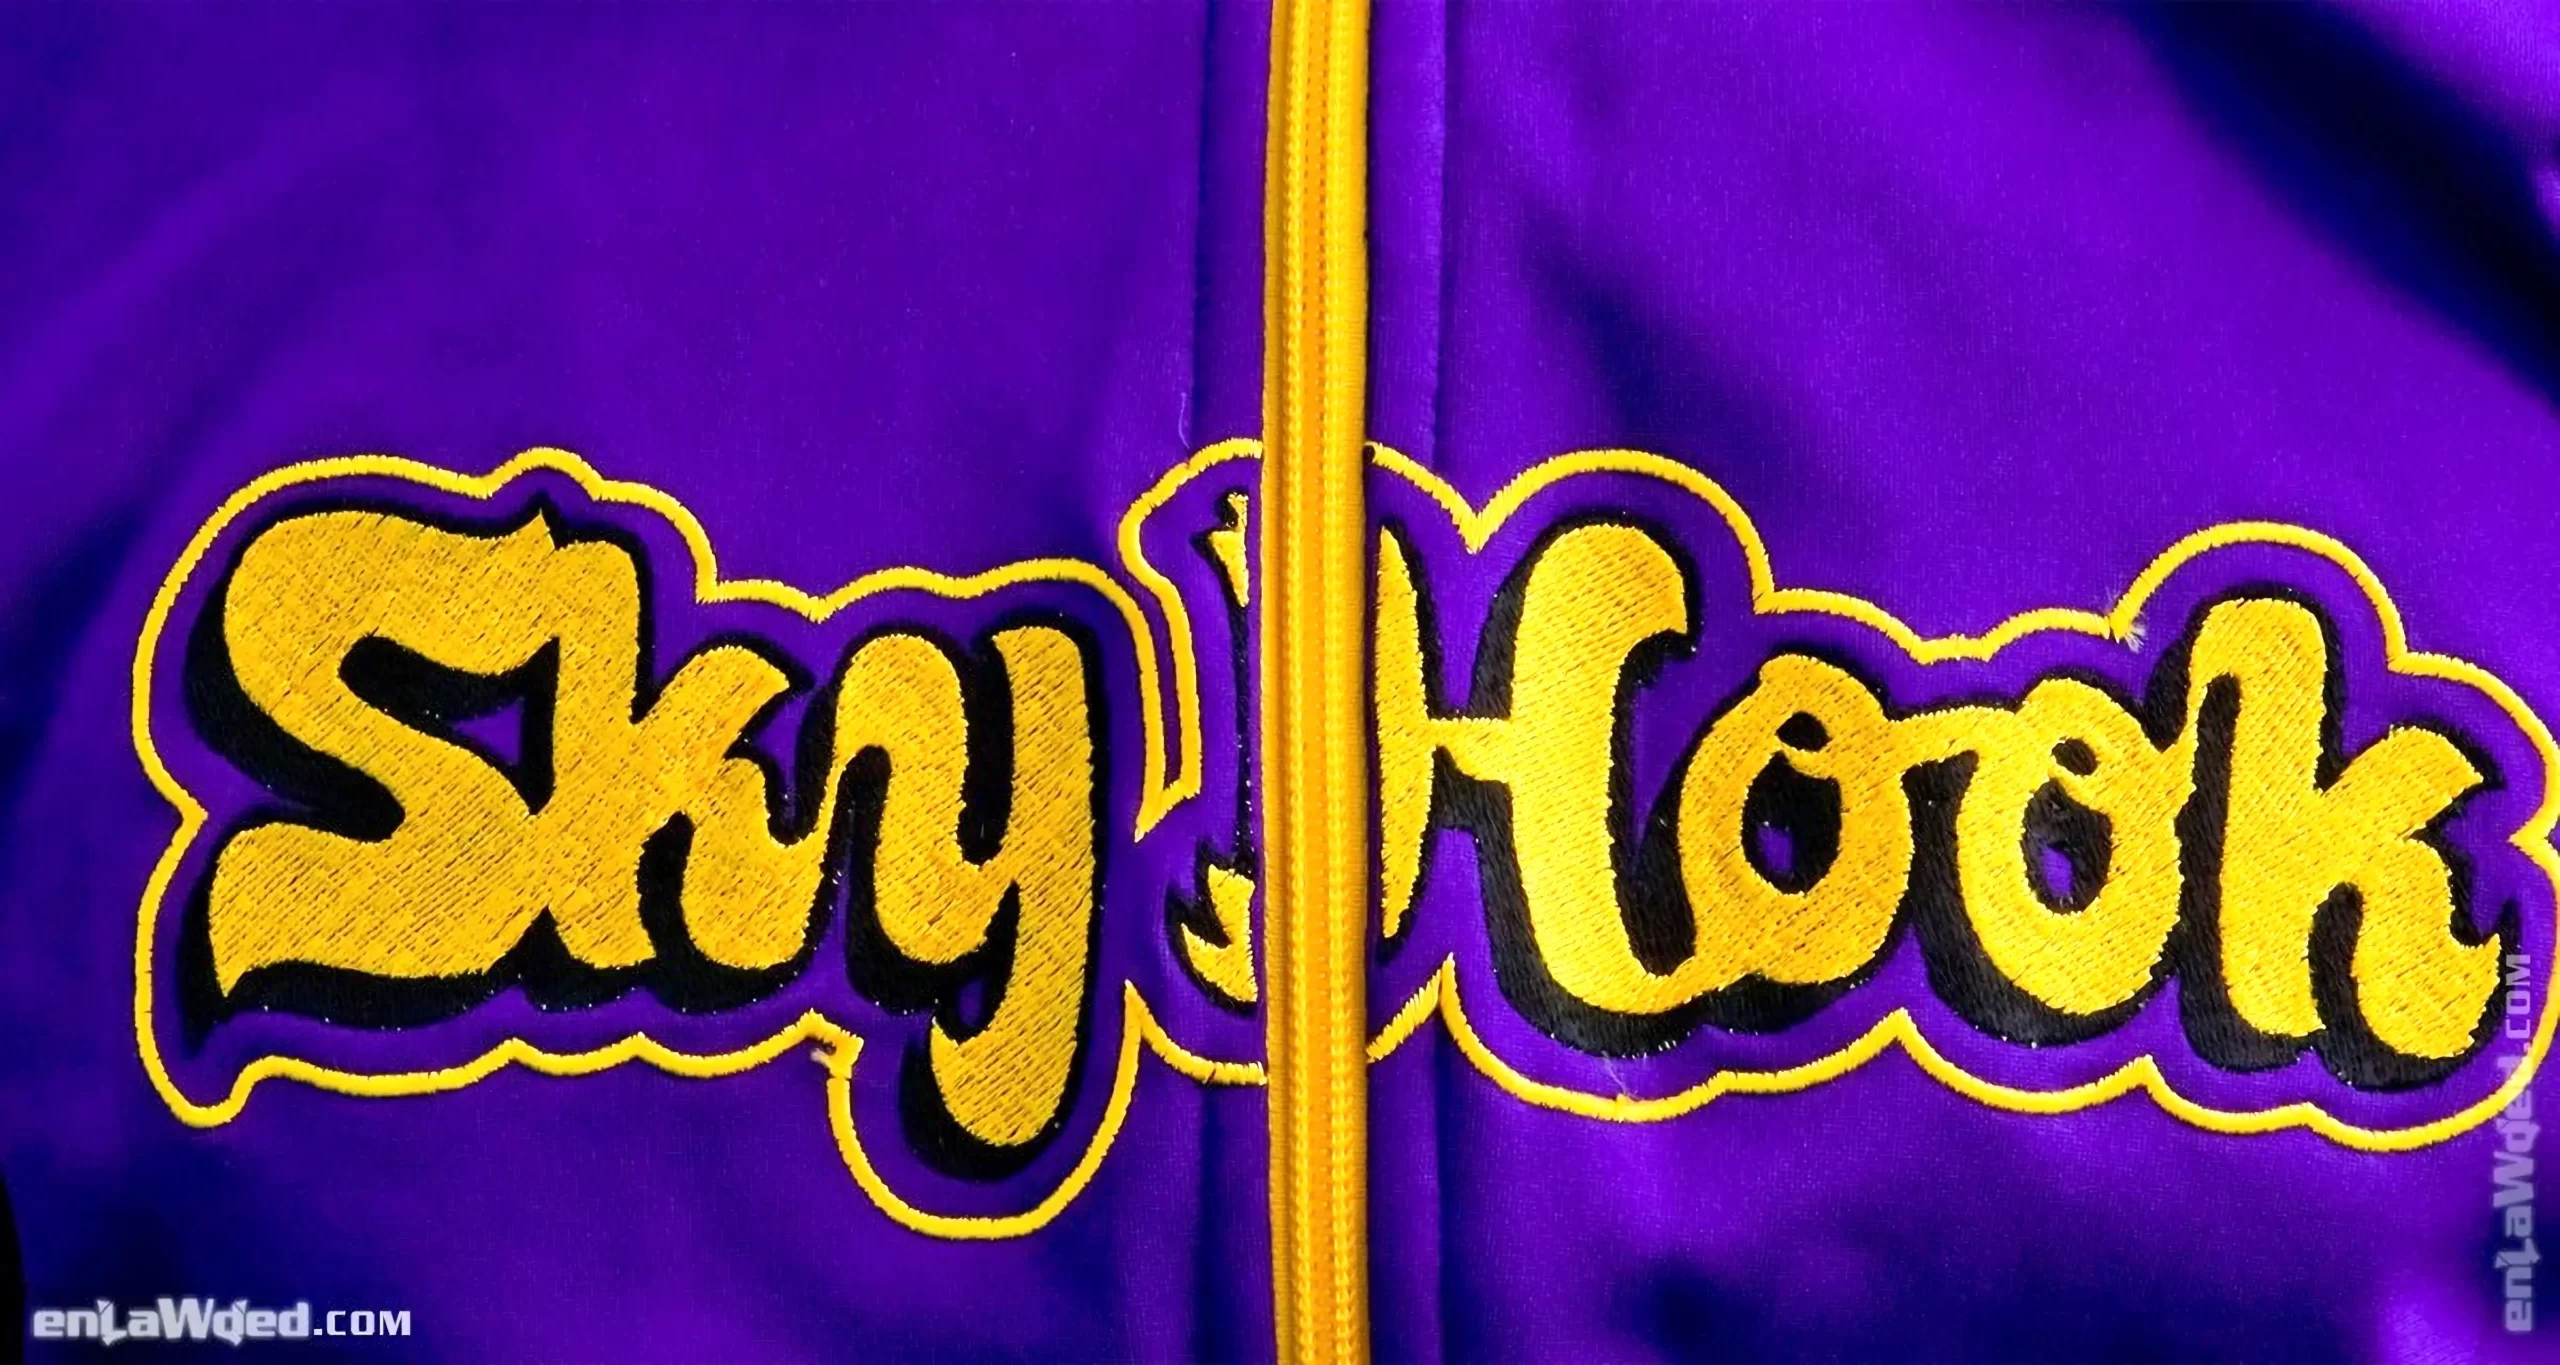 Men’s 2004 SkyHook Lakers #33 Track Top by Adidas: Rookie (EnLawded.com file #lmchk90372ip2y124414kg9st)